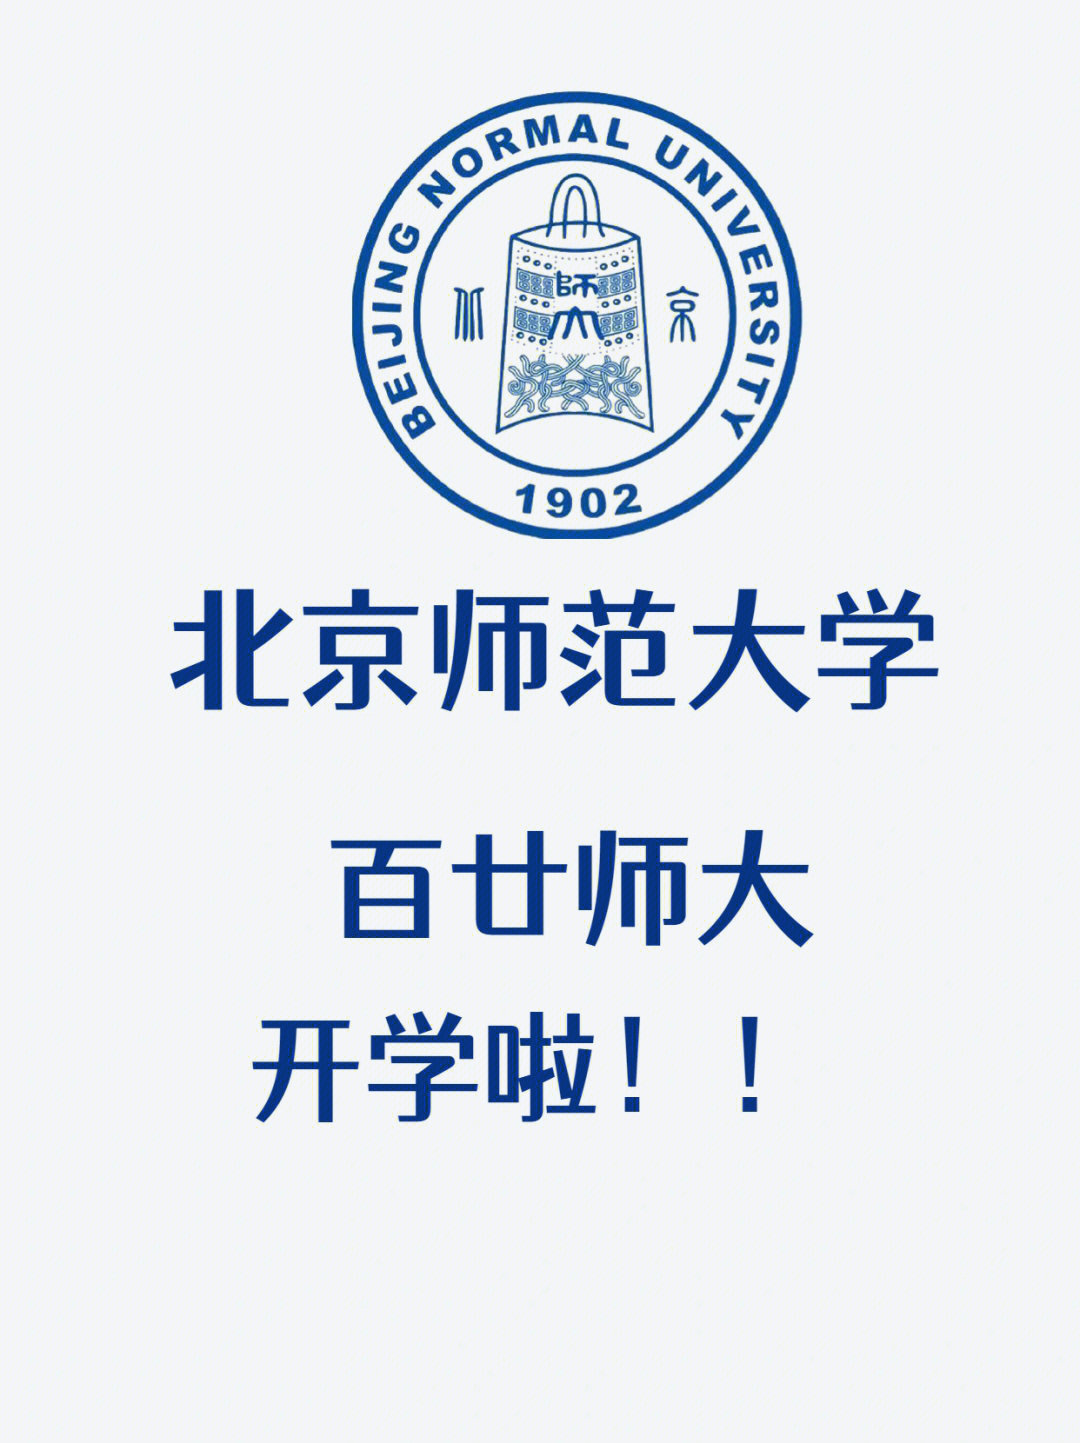 北京师范大学考研百廿师大欢迎你